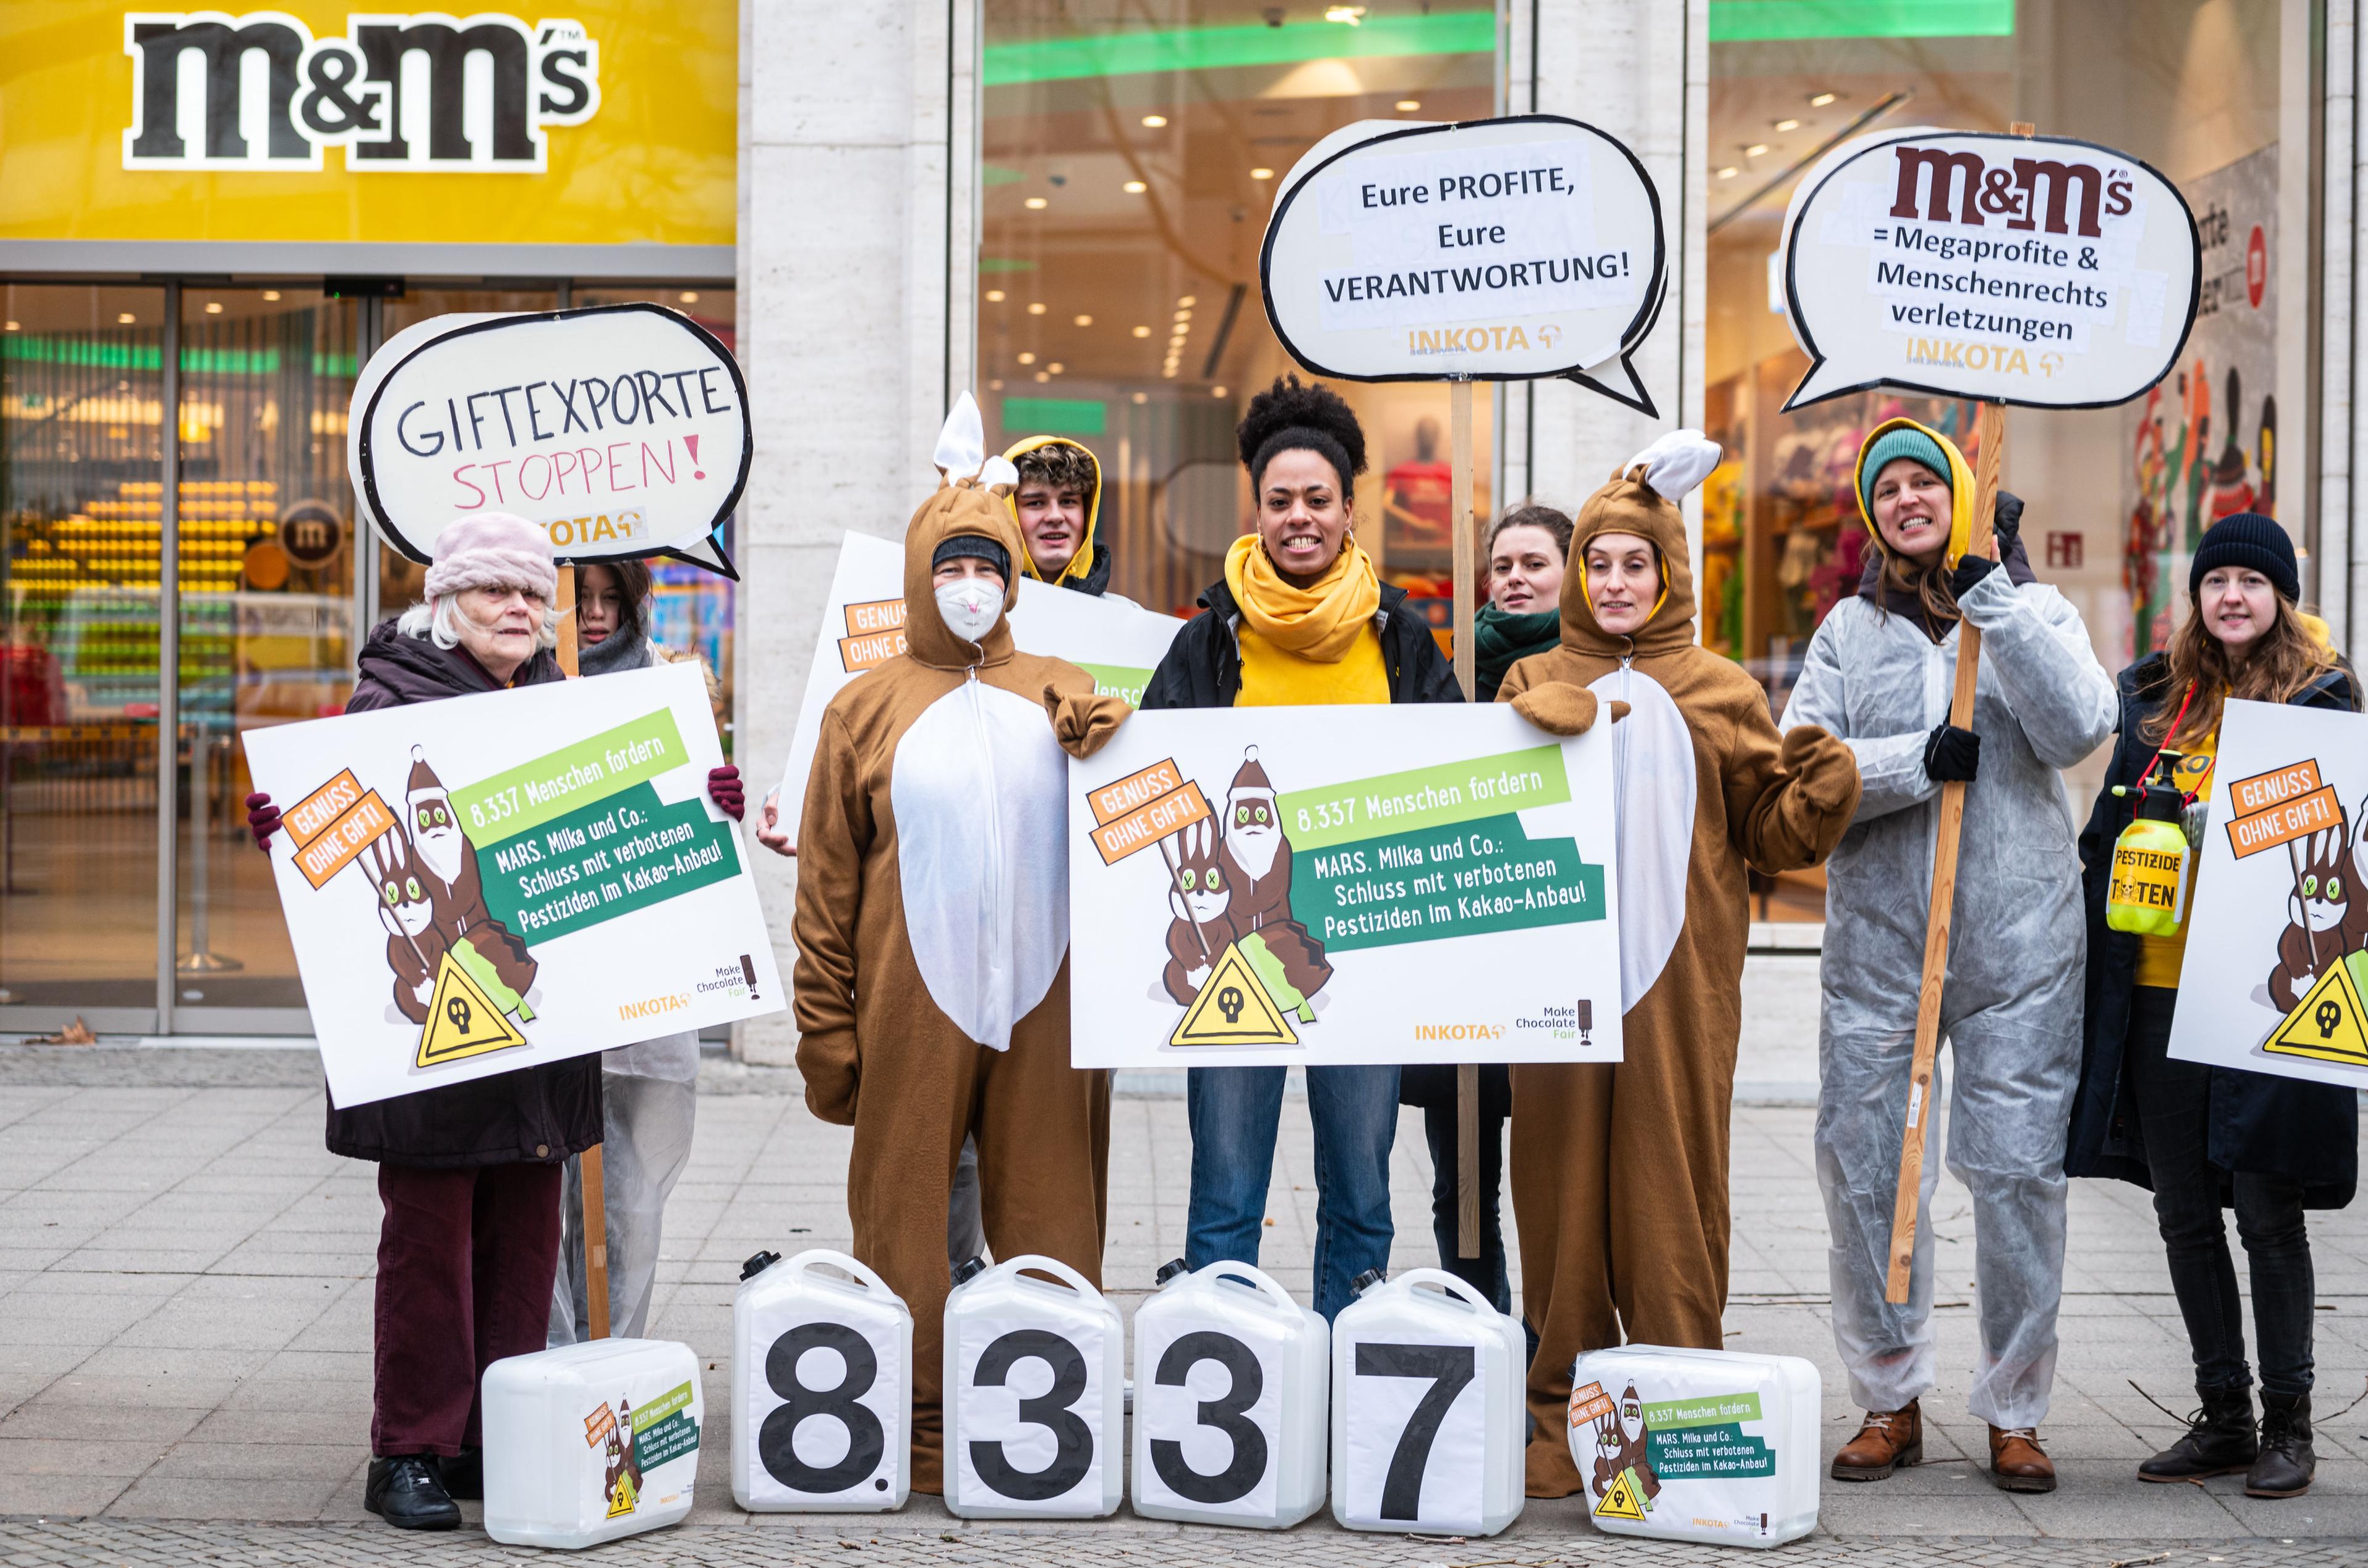 Das INKOTA-Team bei der Kundgebung und Protestaktion vor dem Mars M&M Store in Berlin zum Abschluss der "Genuss ohne Gift"-Aktion